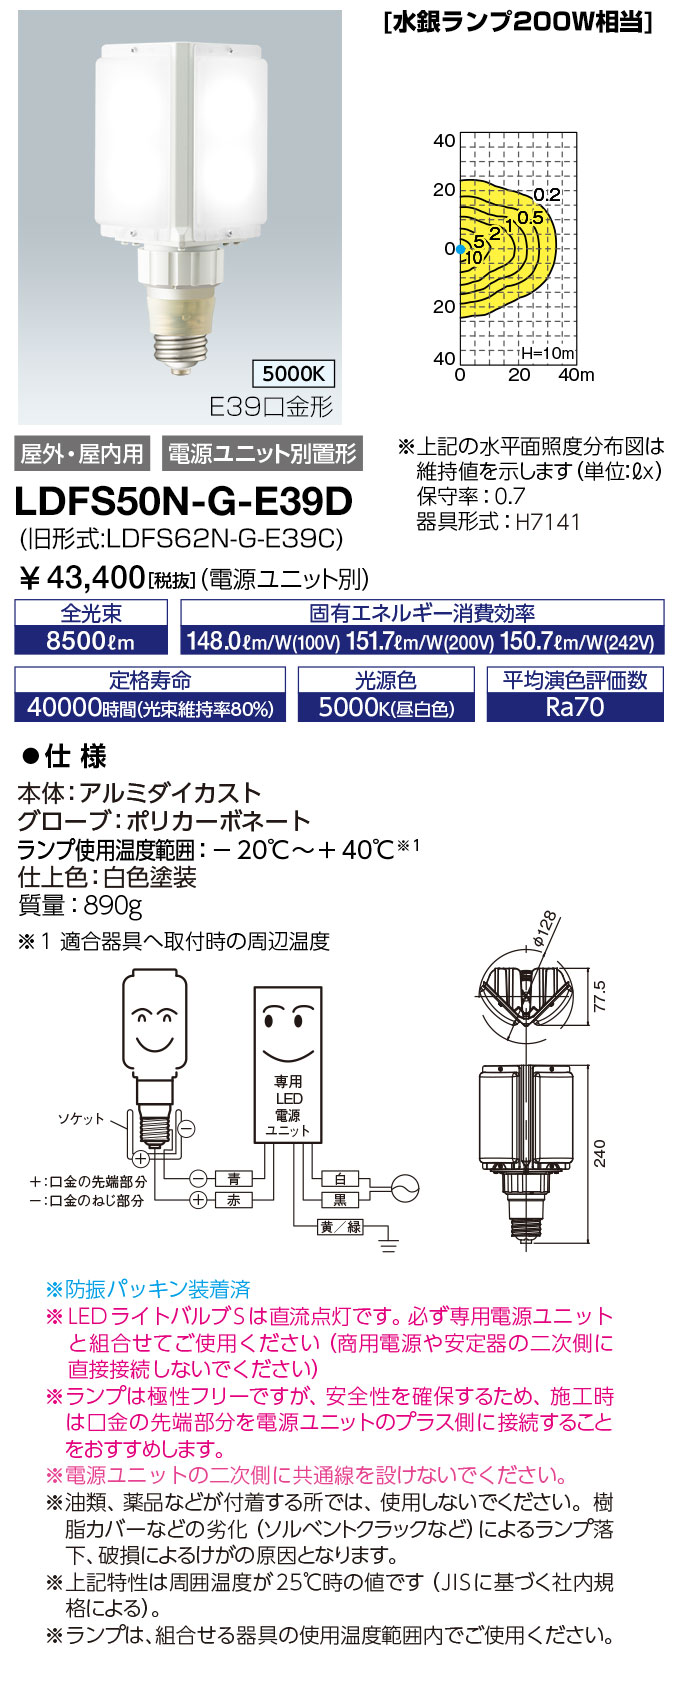 岩崎電気 レディオック LEDライトバルブ LEDランプ110W（E39口金） 昼白色 LDTS110N-G-E39 通販 